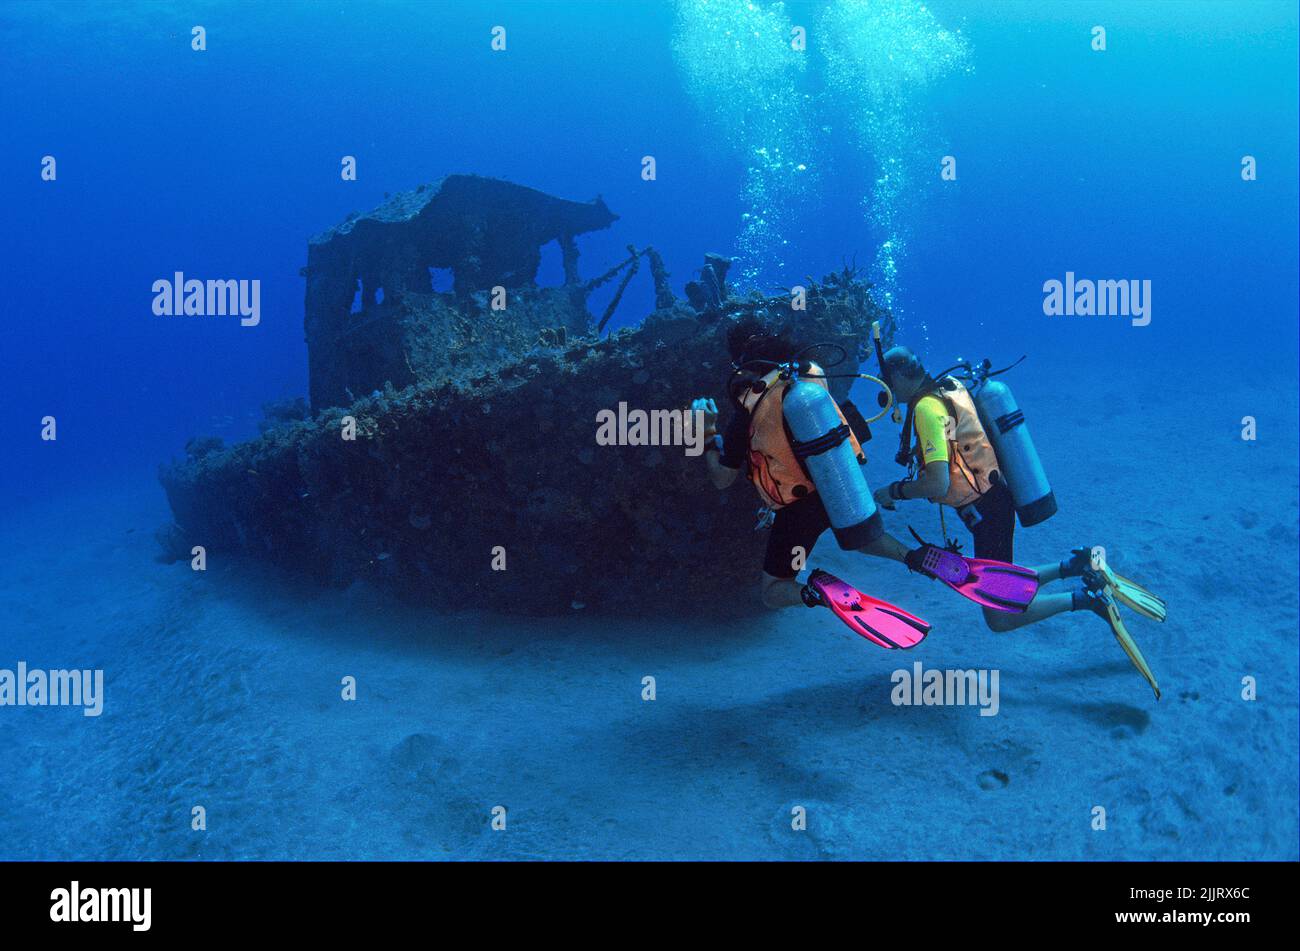 Plongée sous-marine dans une petite épave de navire, Saba, BES-Islands, Antilles néerlandaises, Caraïbes Banque D'Images